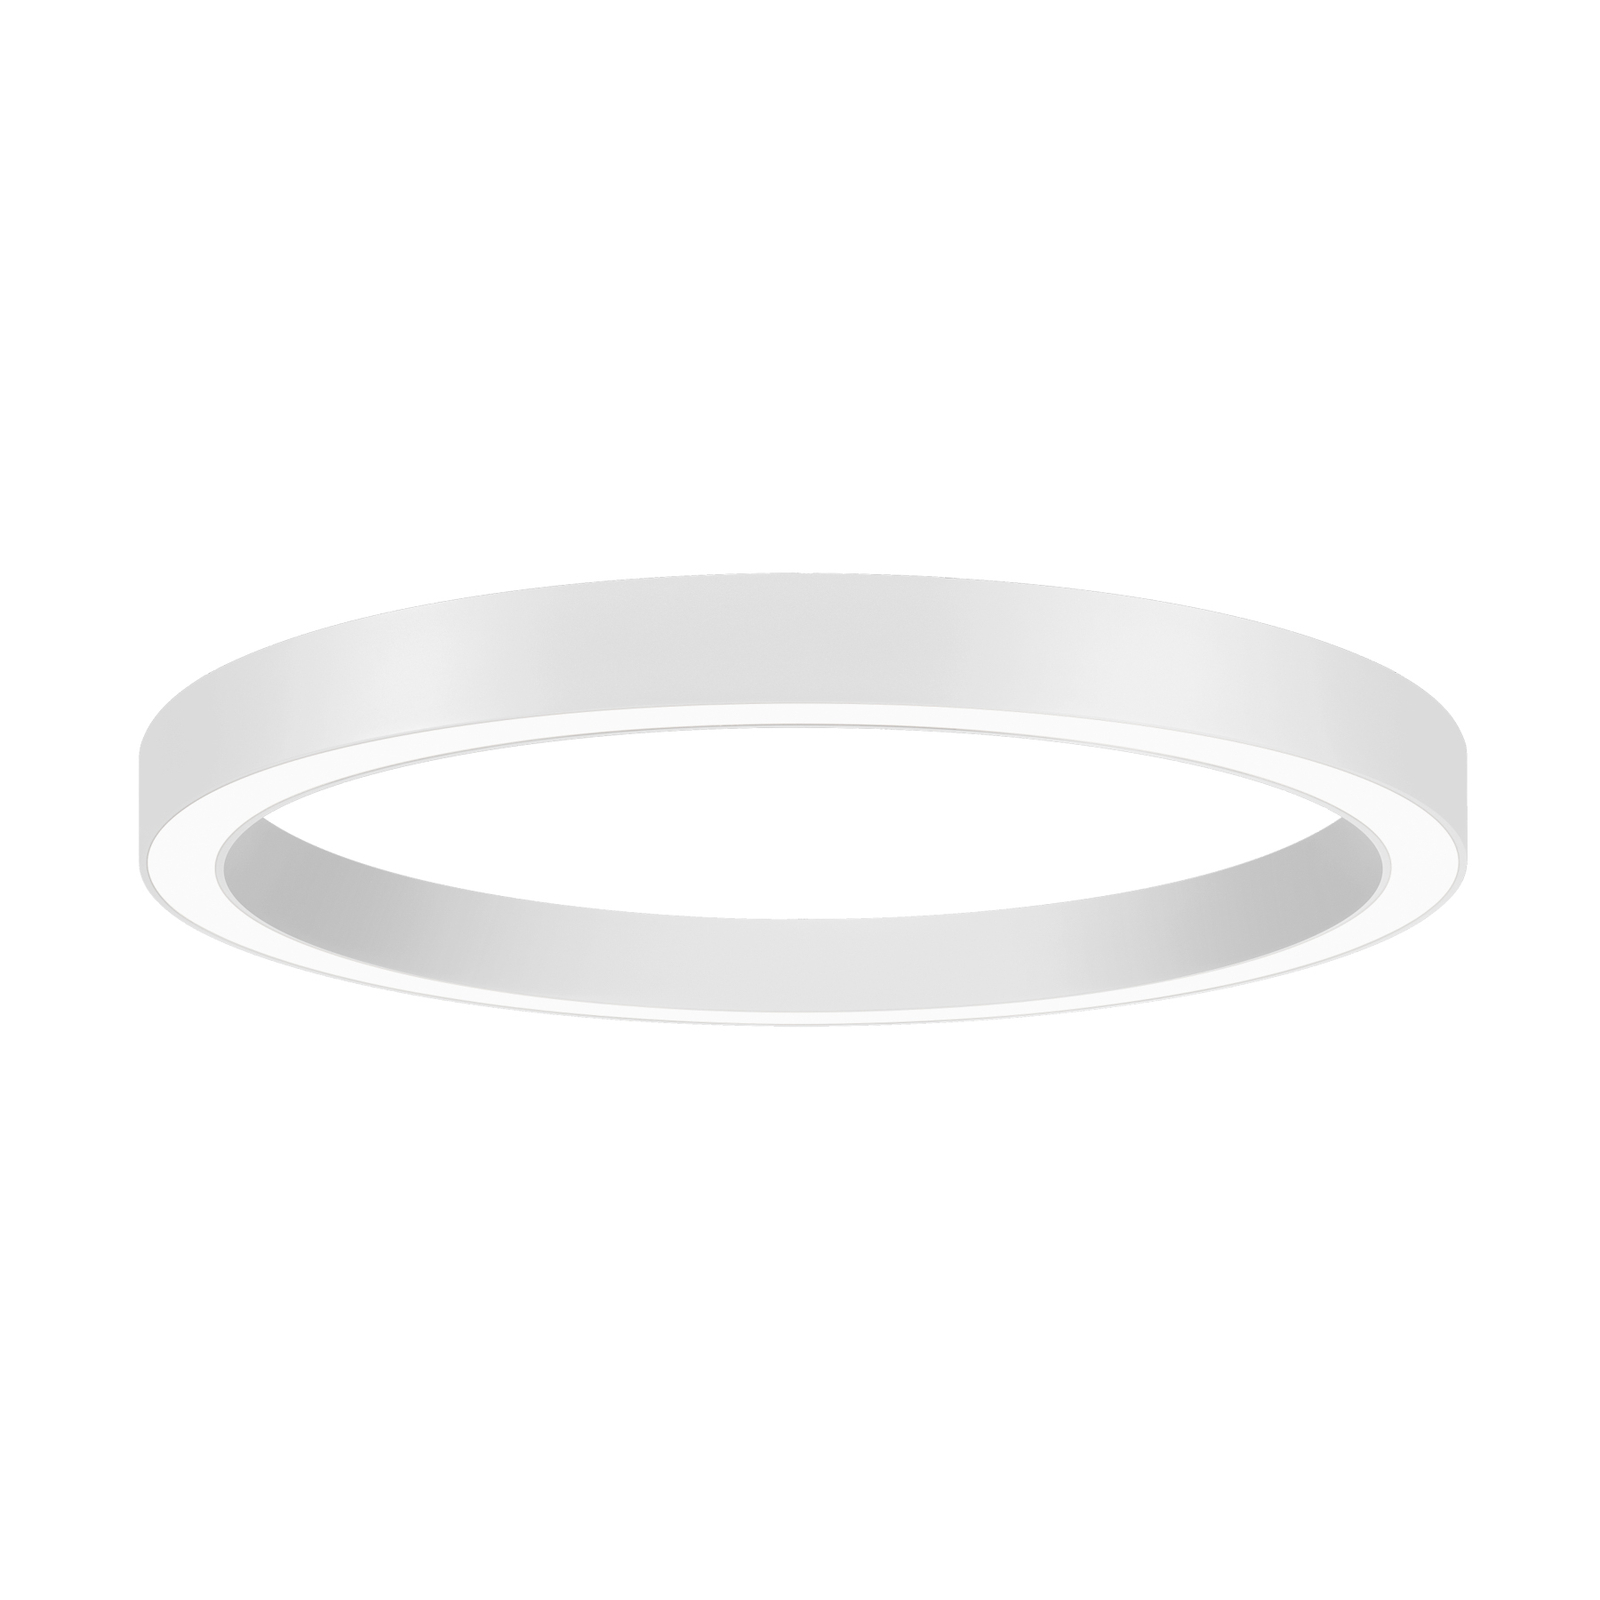 BRUMBERG Biro Circle Ring, Ø 60 cm, Casambi, white, 830